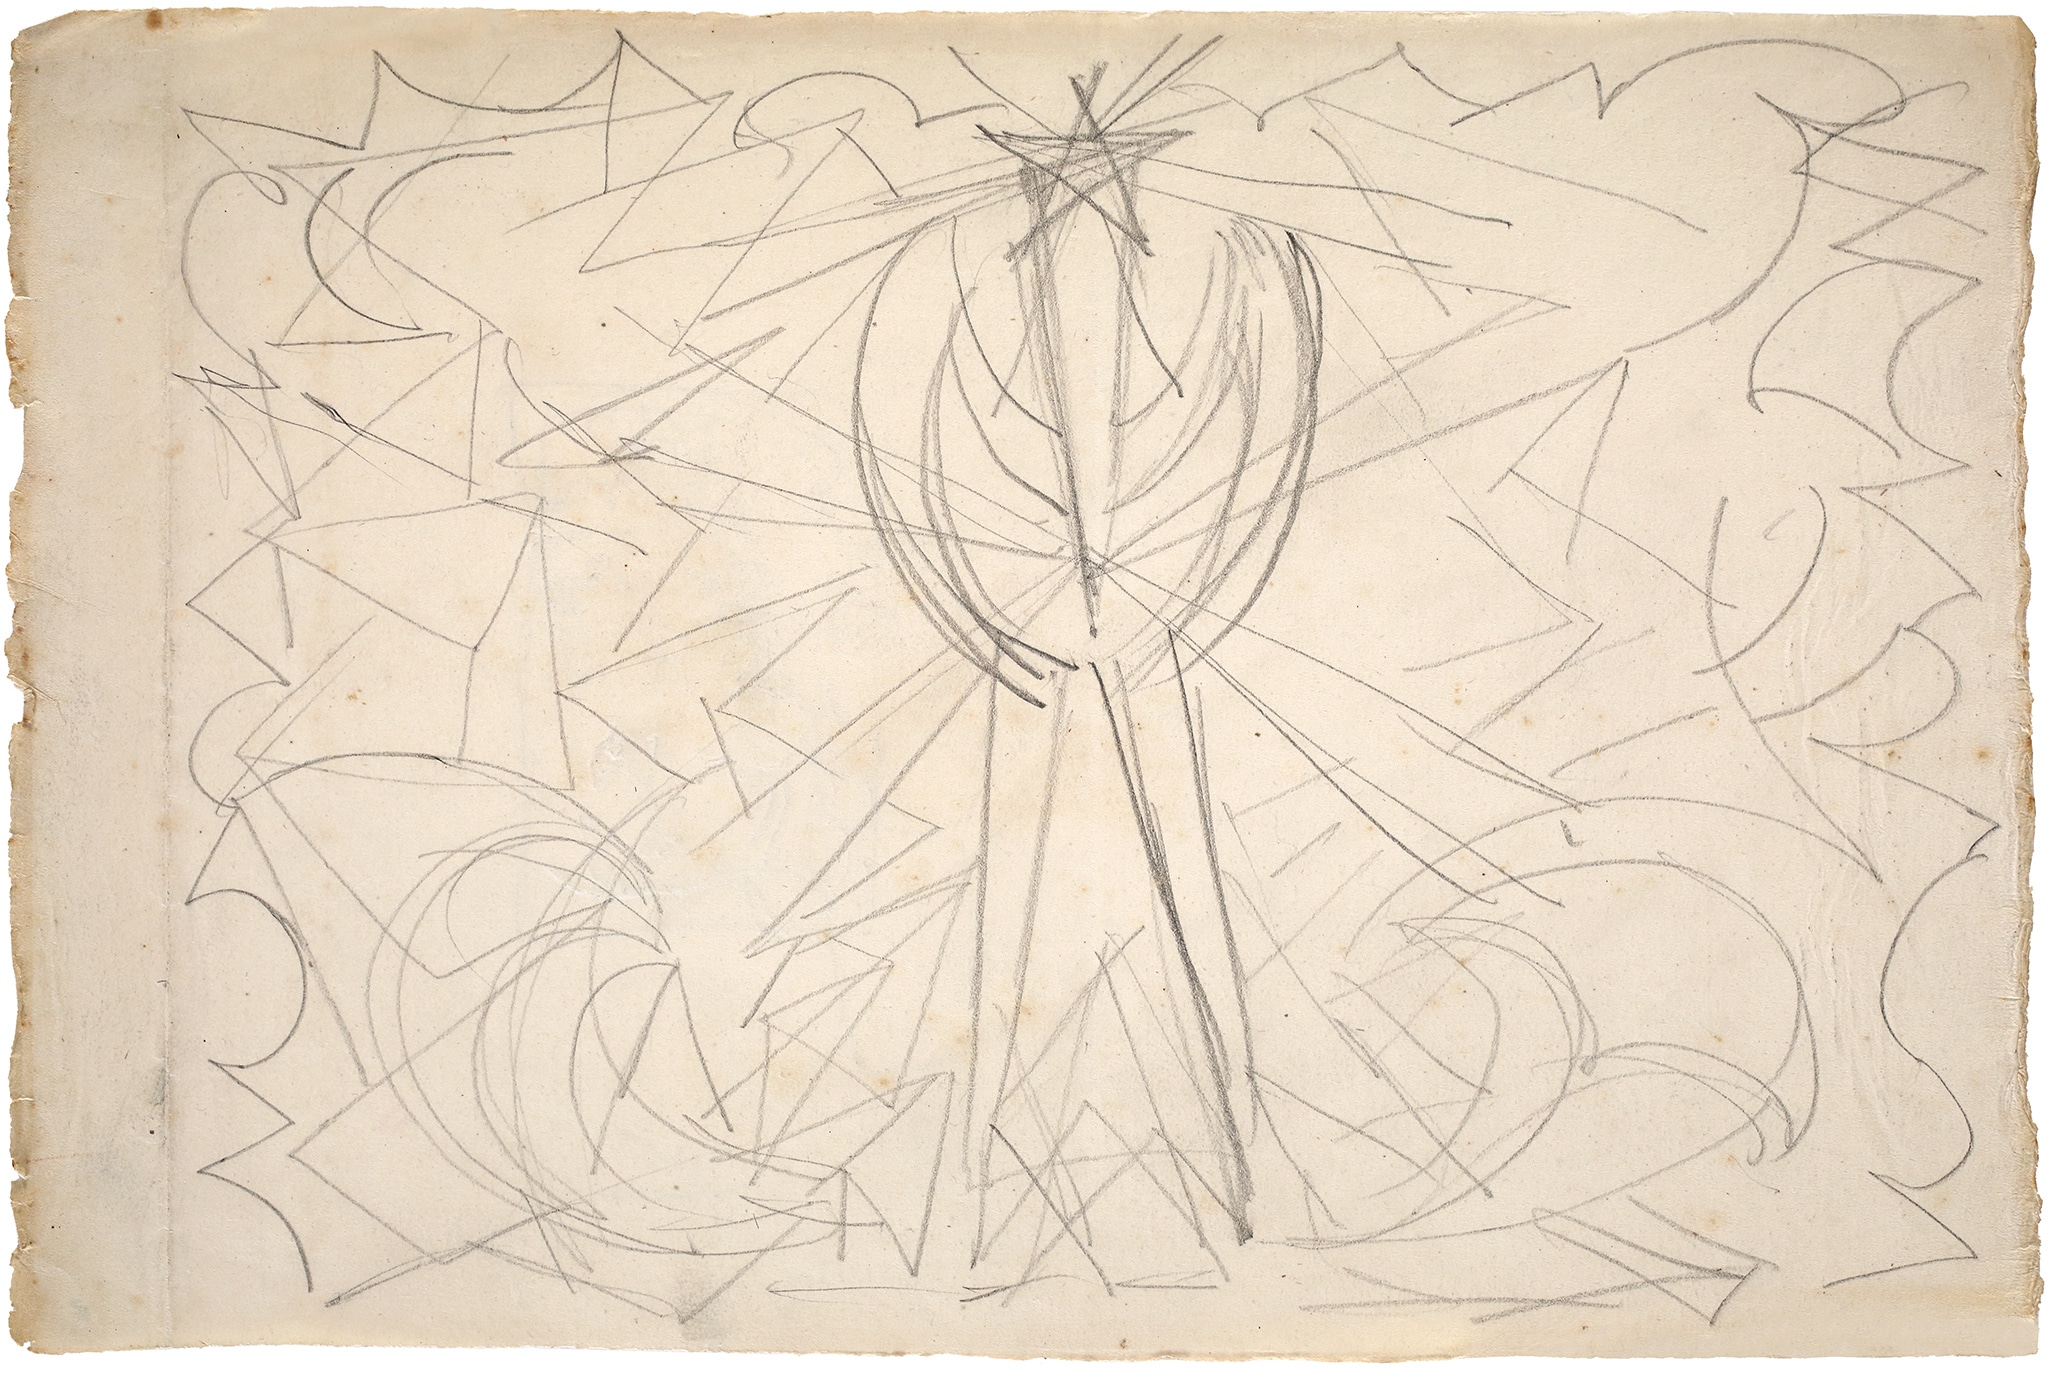 Giacomo Balla "Genio Futurista – studio", 1925 ca. Matita su carta, 220 x 330 mm L’opera è un primo studio preparatorio per il grande dipinto omonimo su tela d’arazzo esposto all’ Exposition Internationale des Arts Decoratifs a Parigi nel giugno 1925 